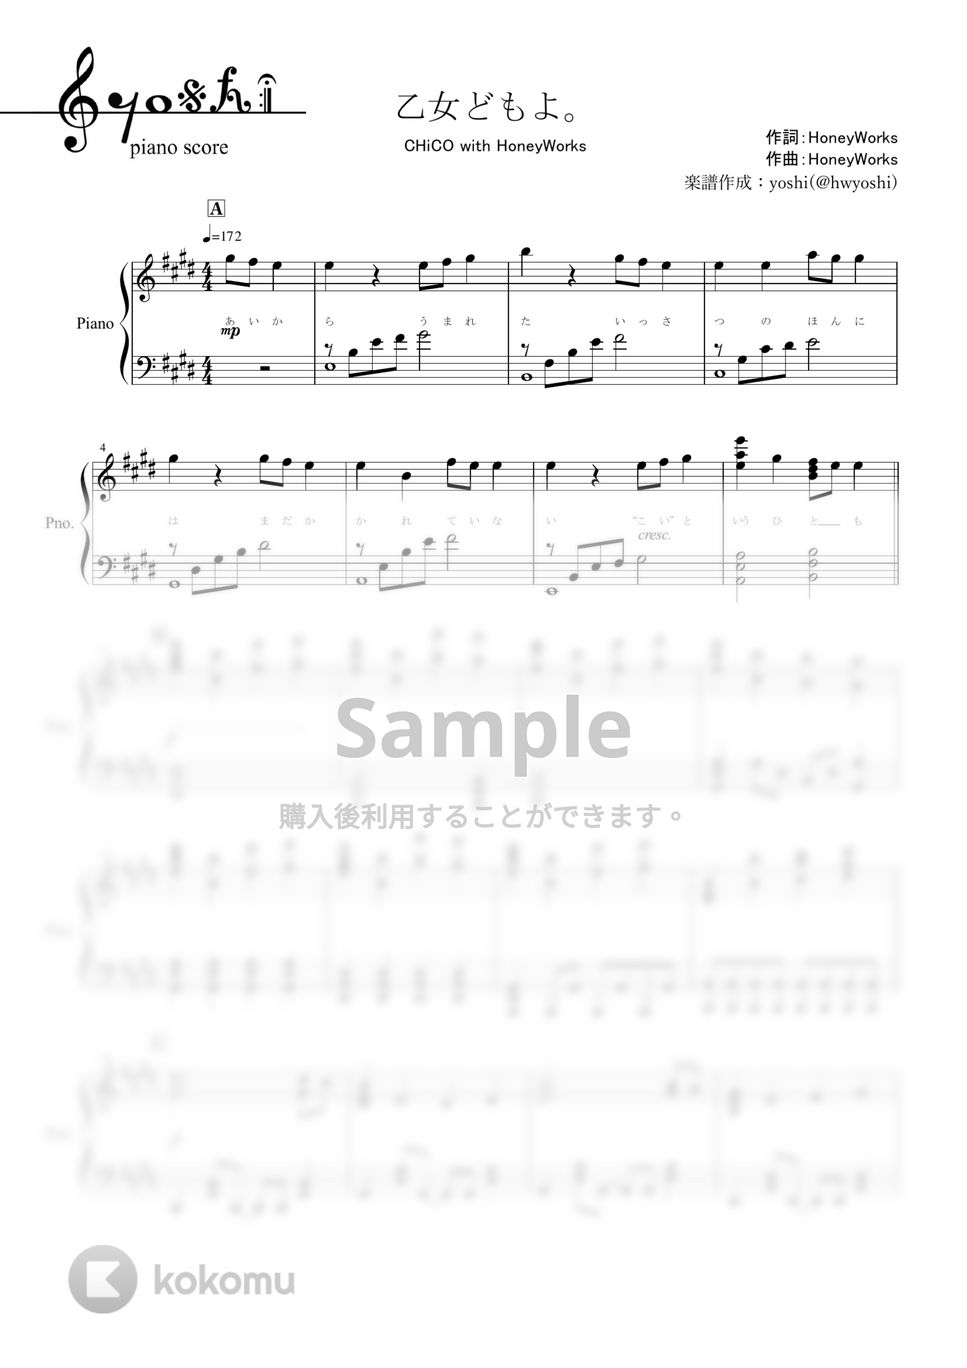 荒ぶる季節の乙女どもよ。 - 乙女どもよ。 (CHiCO with HoneyWorks / ピアノ楽譜) by yoshi